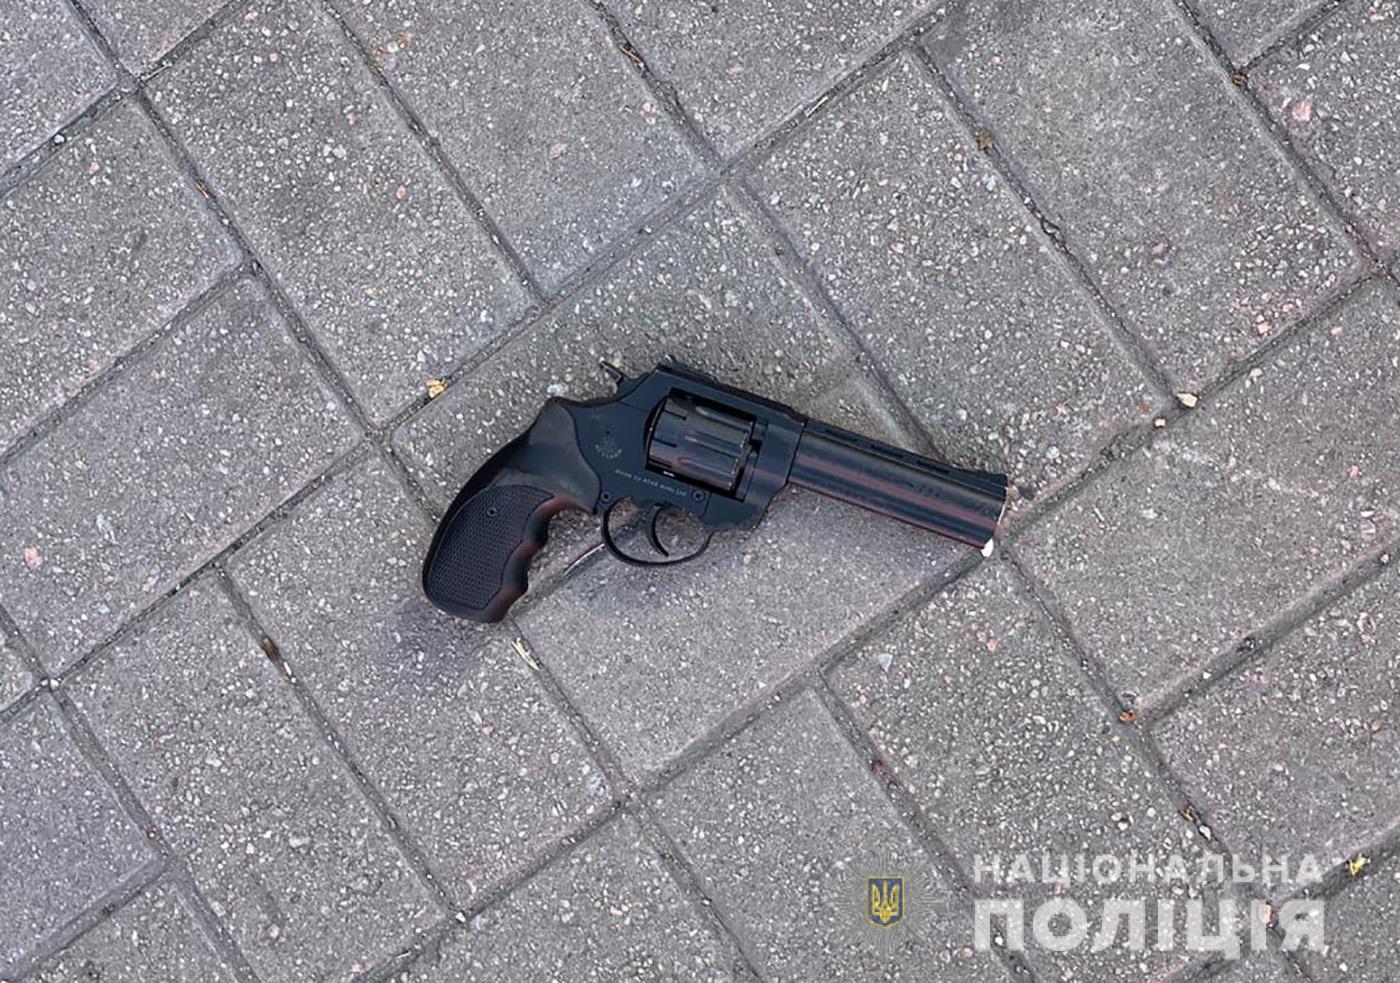 В запорожском автобусе мужчина приставил револьвер к груди полицейского (ФОТО)